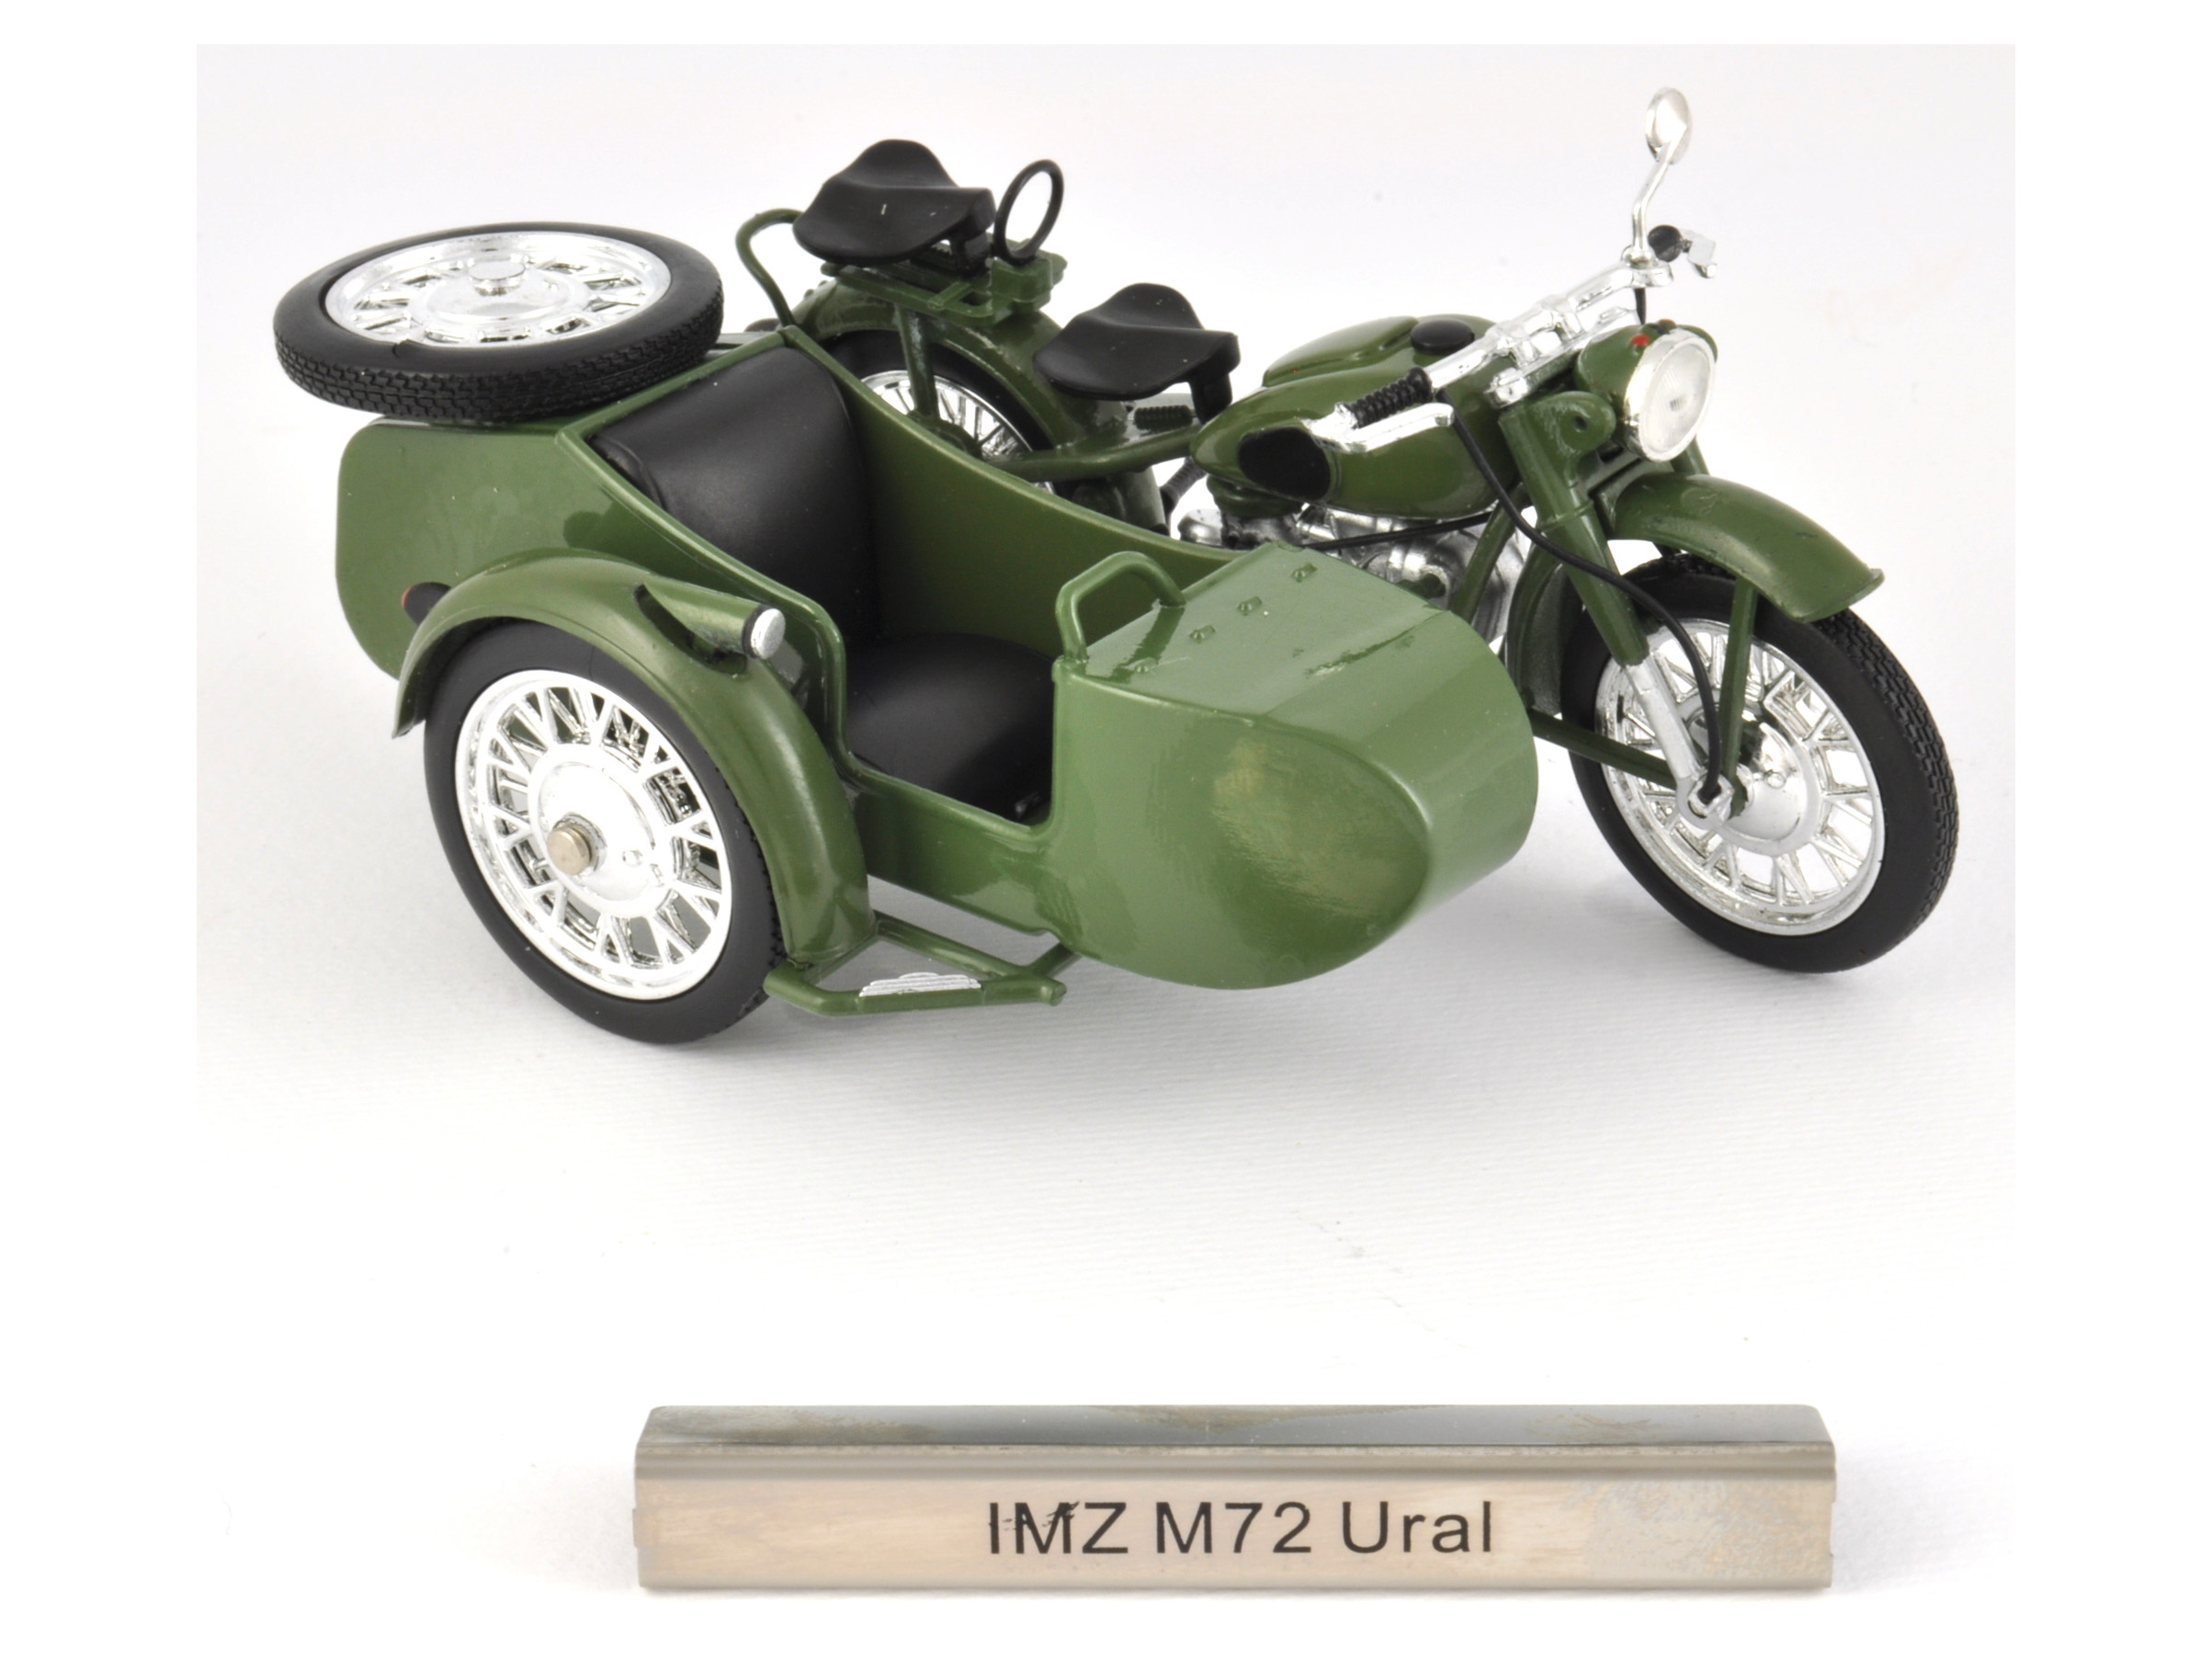 IMZ M72 Ural